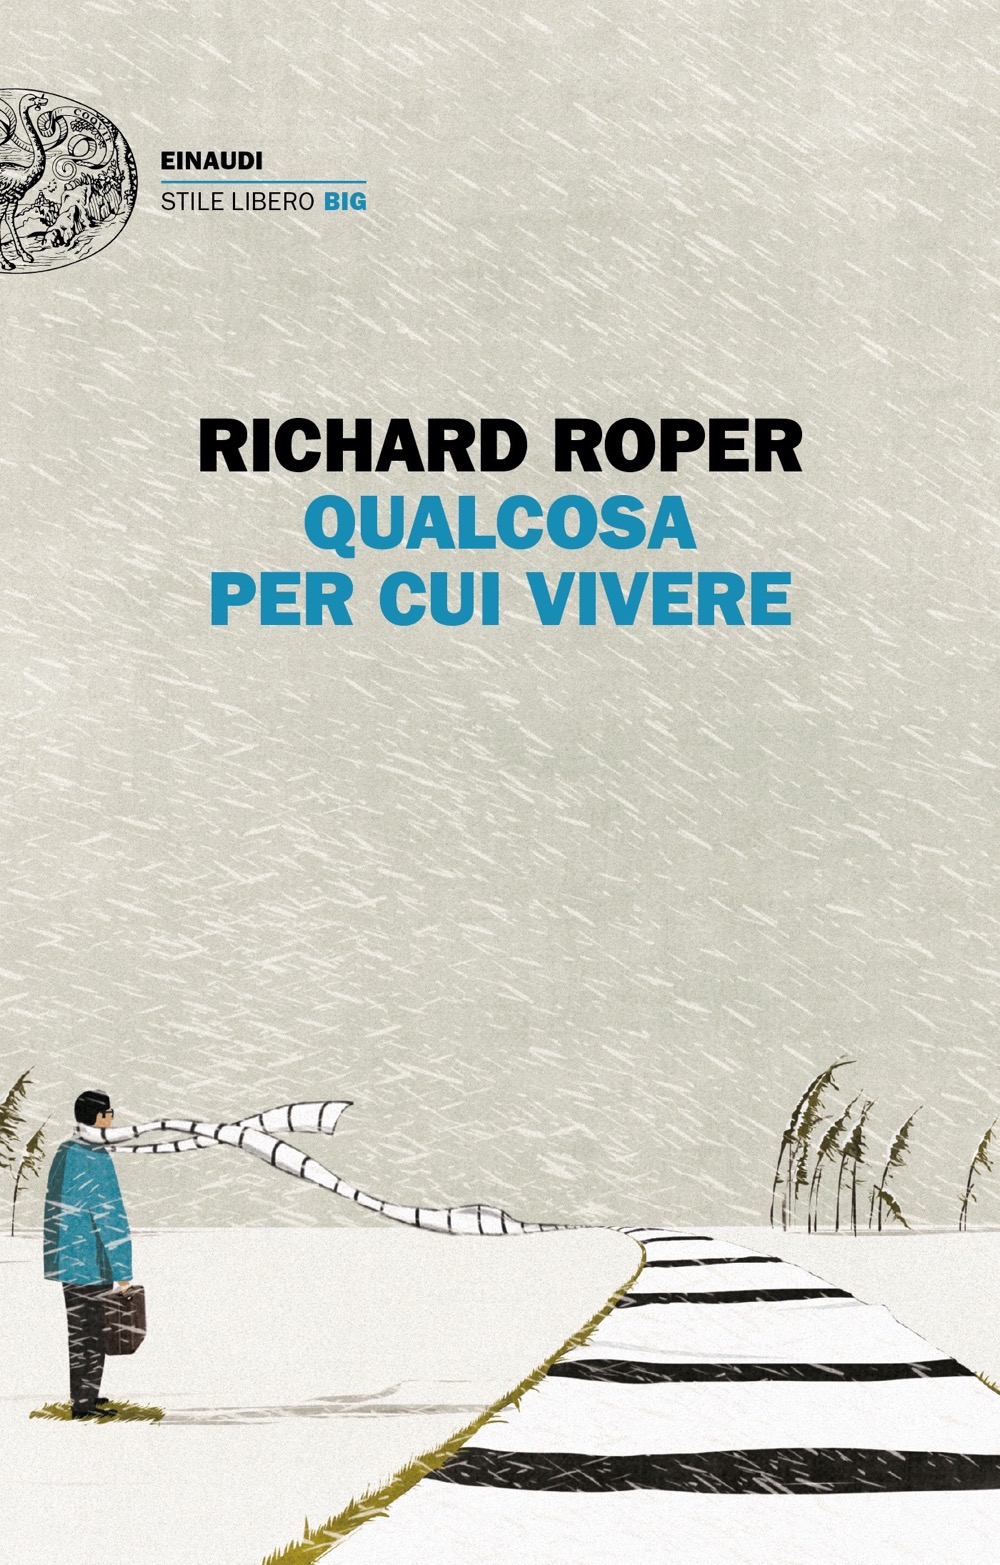 Qualcosa per cui vivere, Richard Roper. Giulio Einaudi Editore - Stile  libero Big